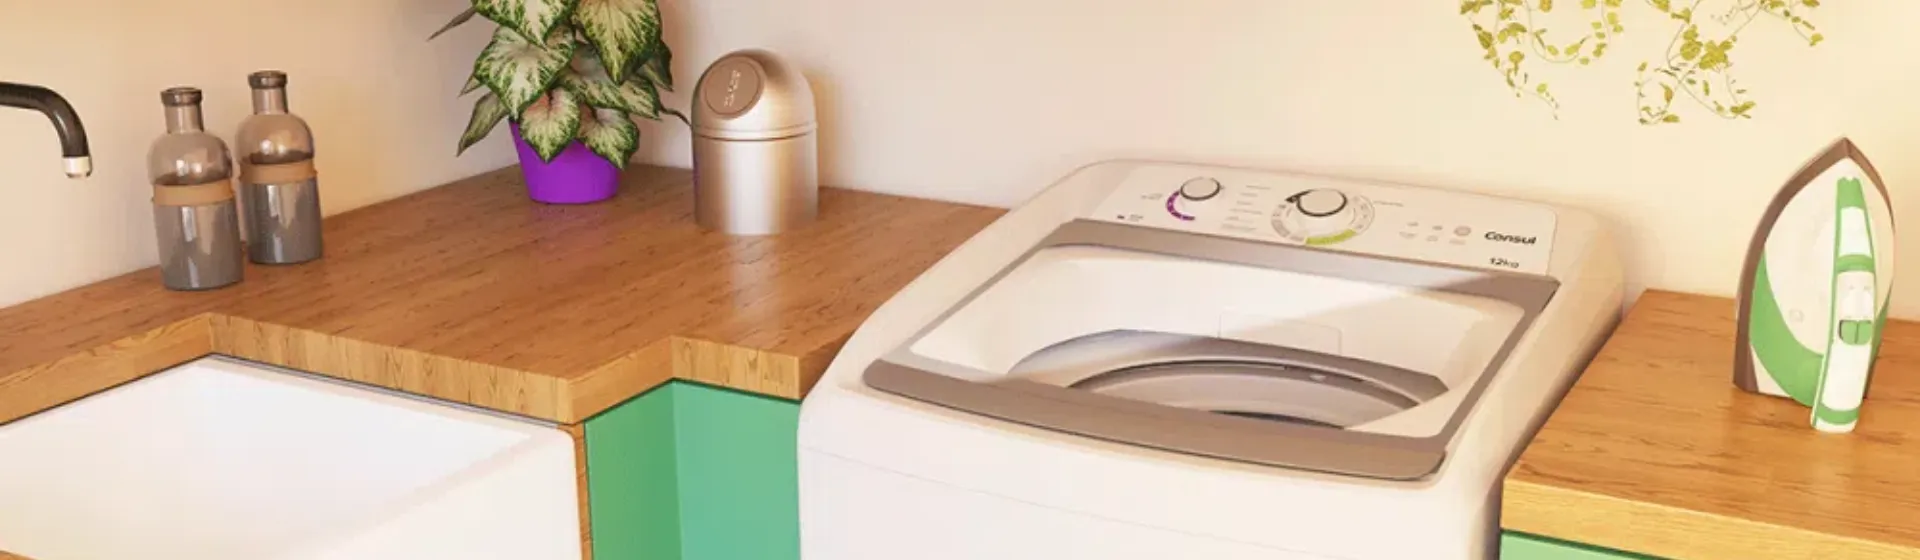 lavadora Consul 12kg CWH12AB entre armários de lavanderia verdes com tampo de madeira